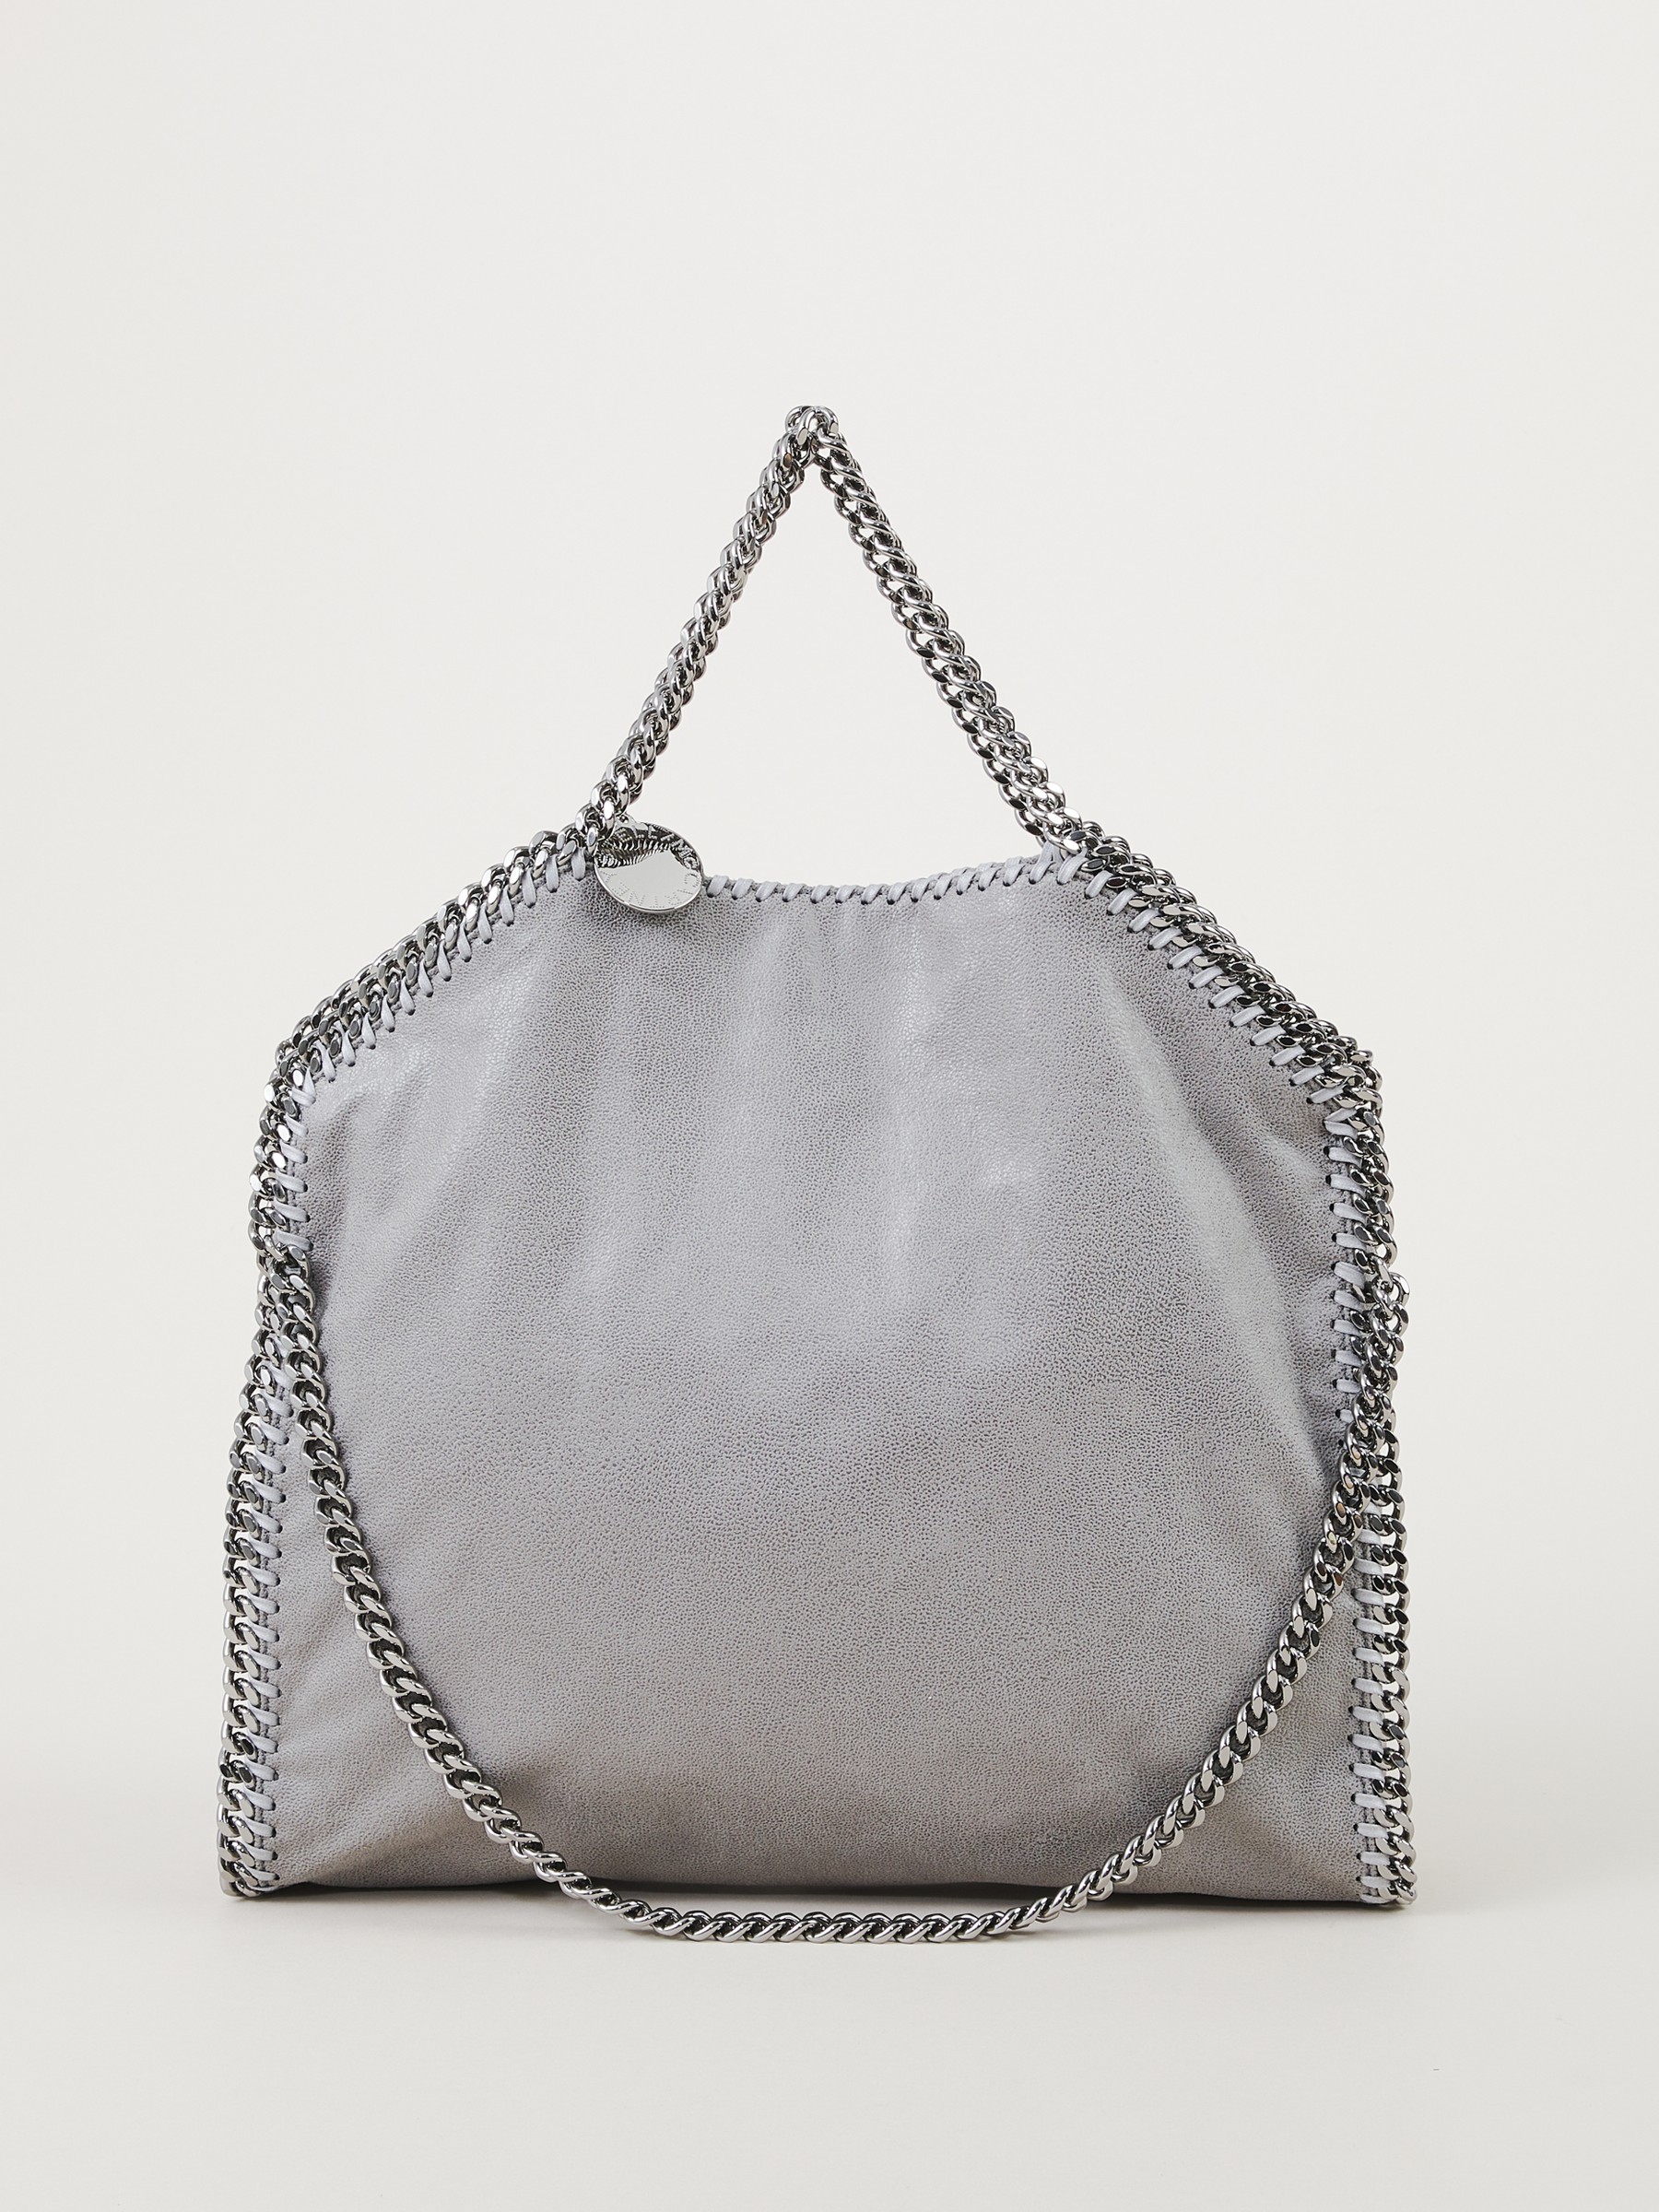 Stella McCartney Handbag 'Falabella 3 Chain' Grey | Shopper